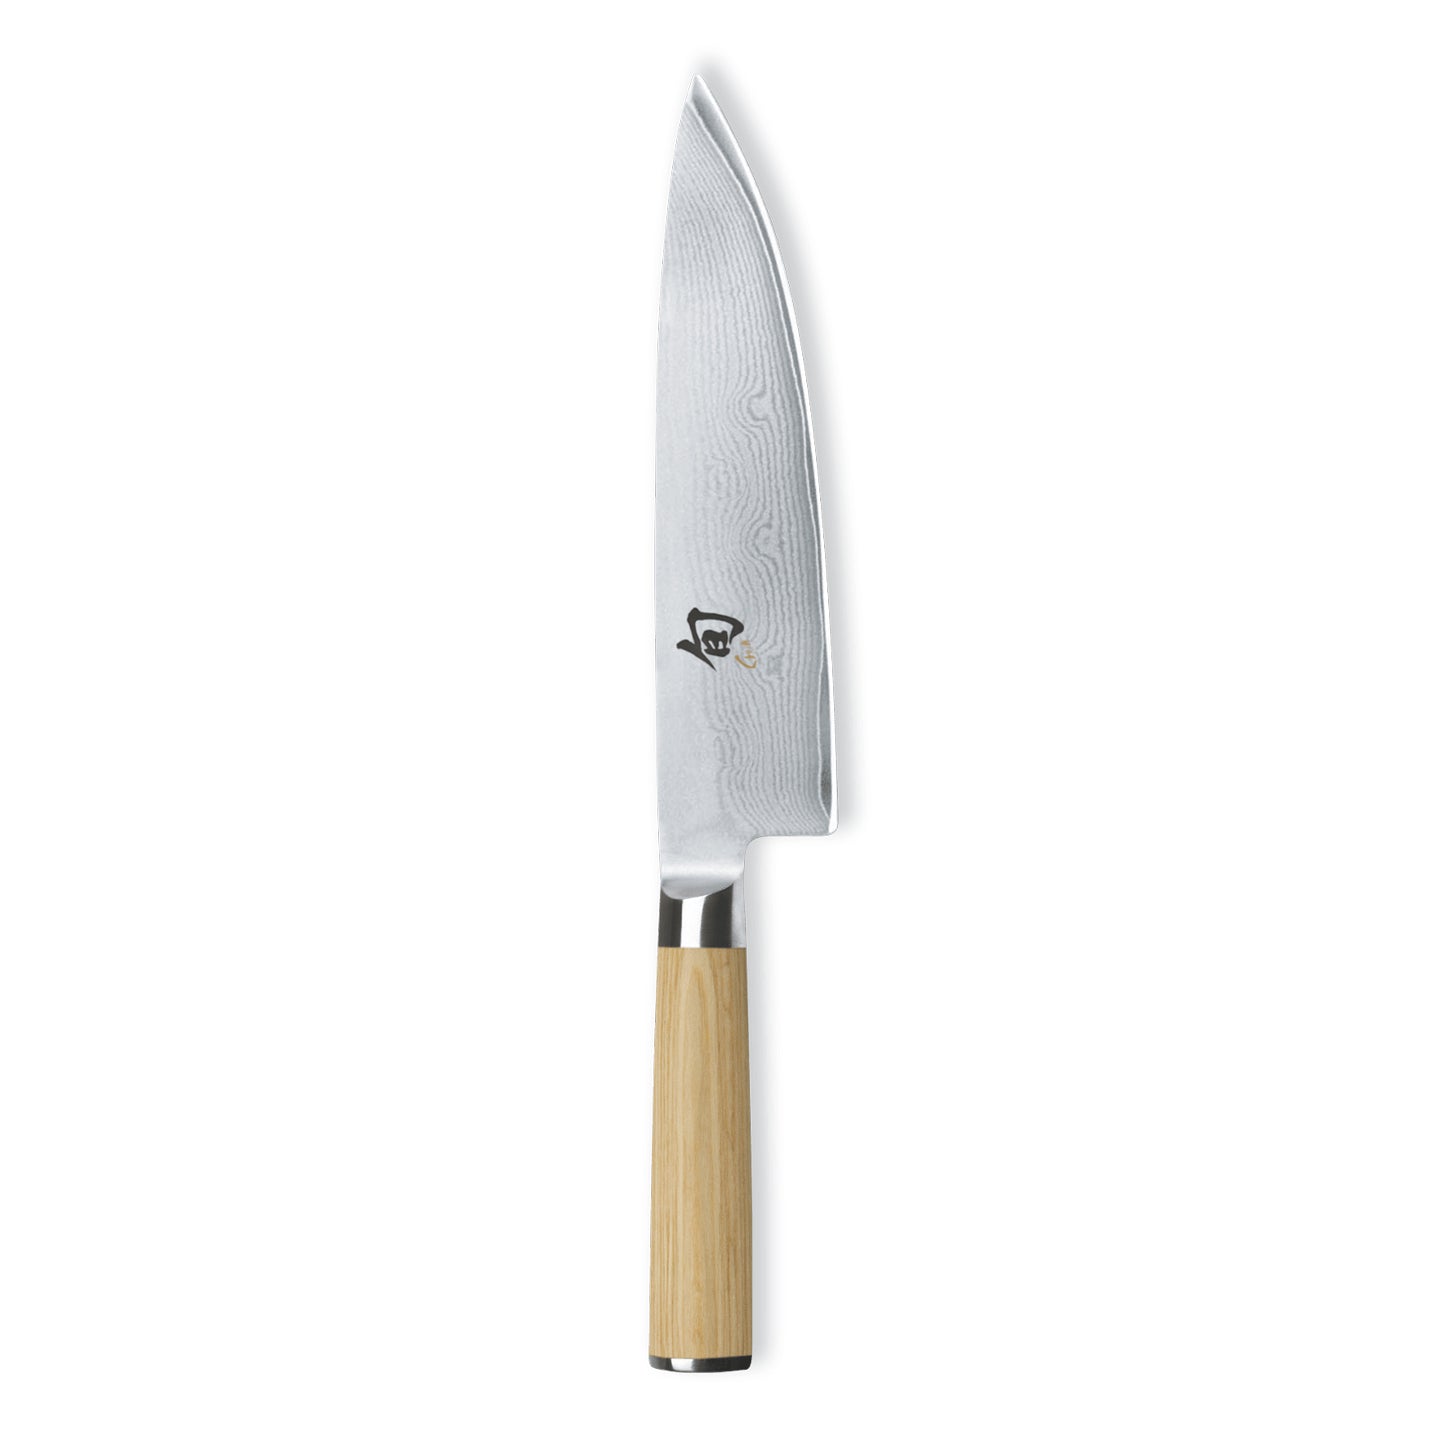 http://www.boroughkitchen.com/cdn/shop/products/kai-shun-classic-chefs-knife-white-borough-kitchen.jpg?v=1599769512